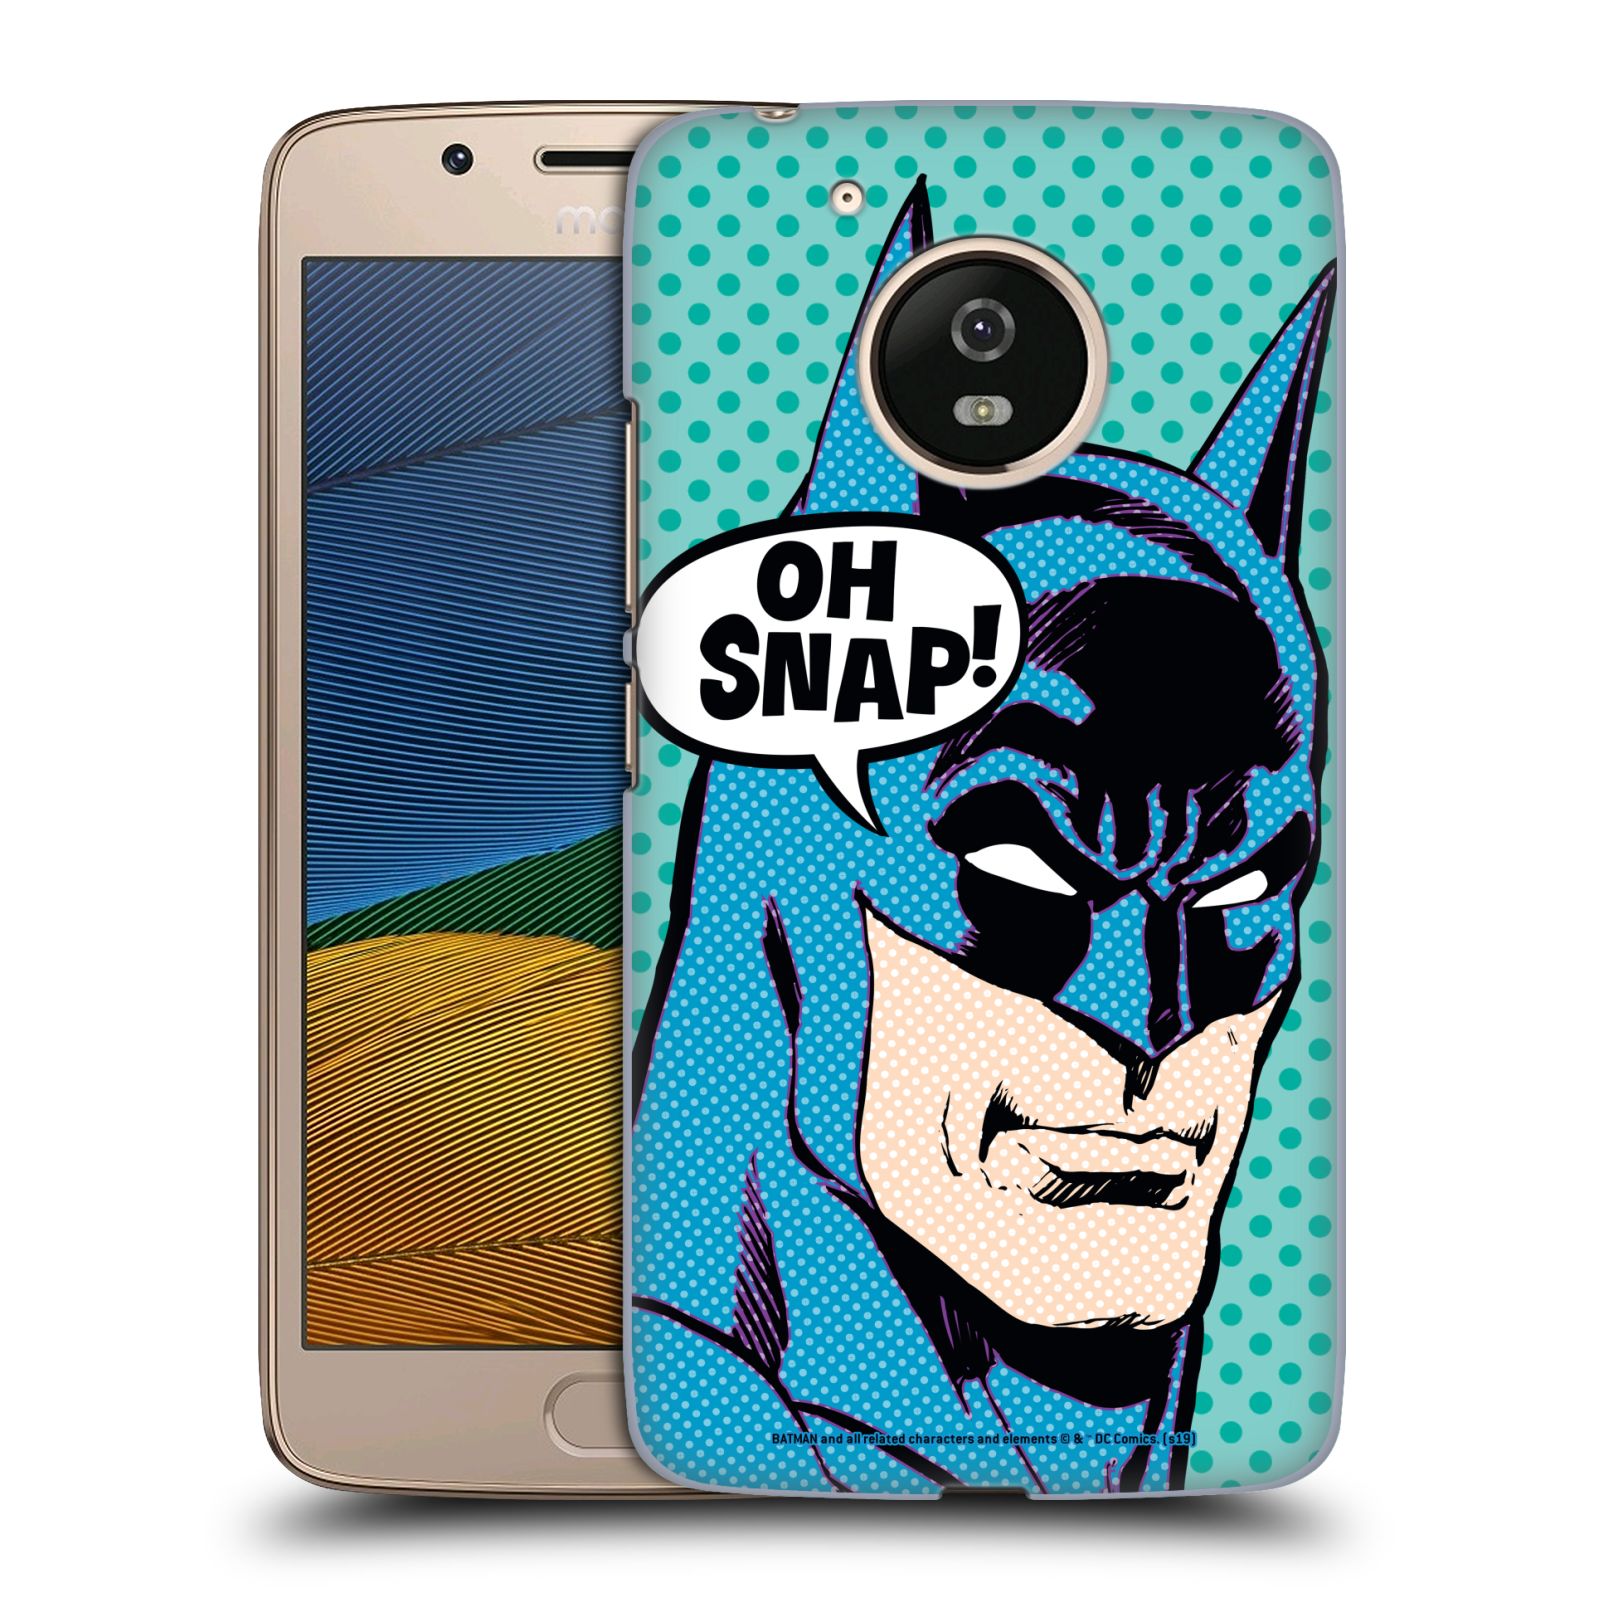 Pouzdro na mobil Lenovo Moto G5 - HEAD CASE - DC komix Batman Pop Art tvář